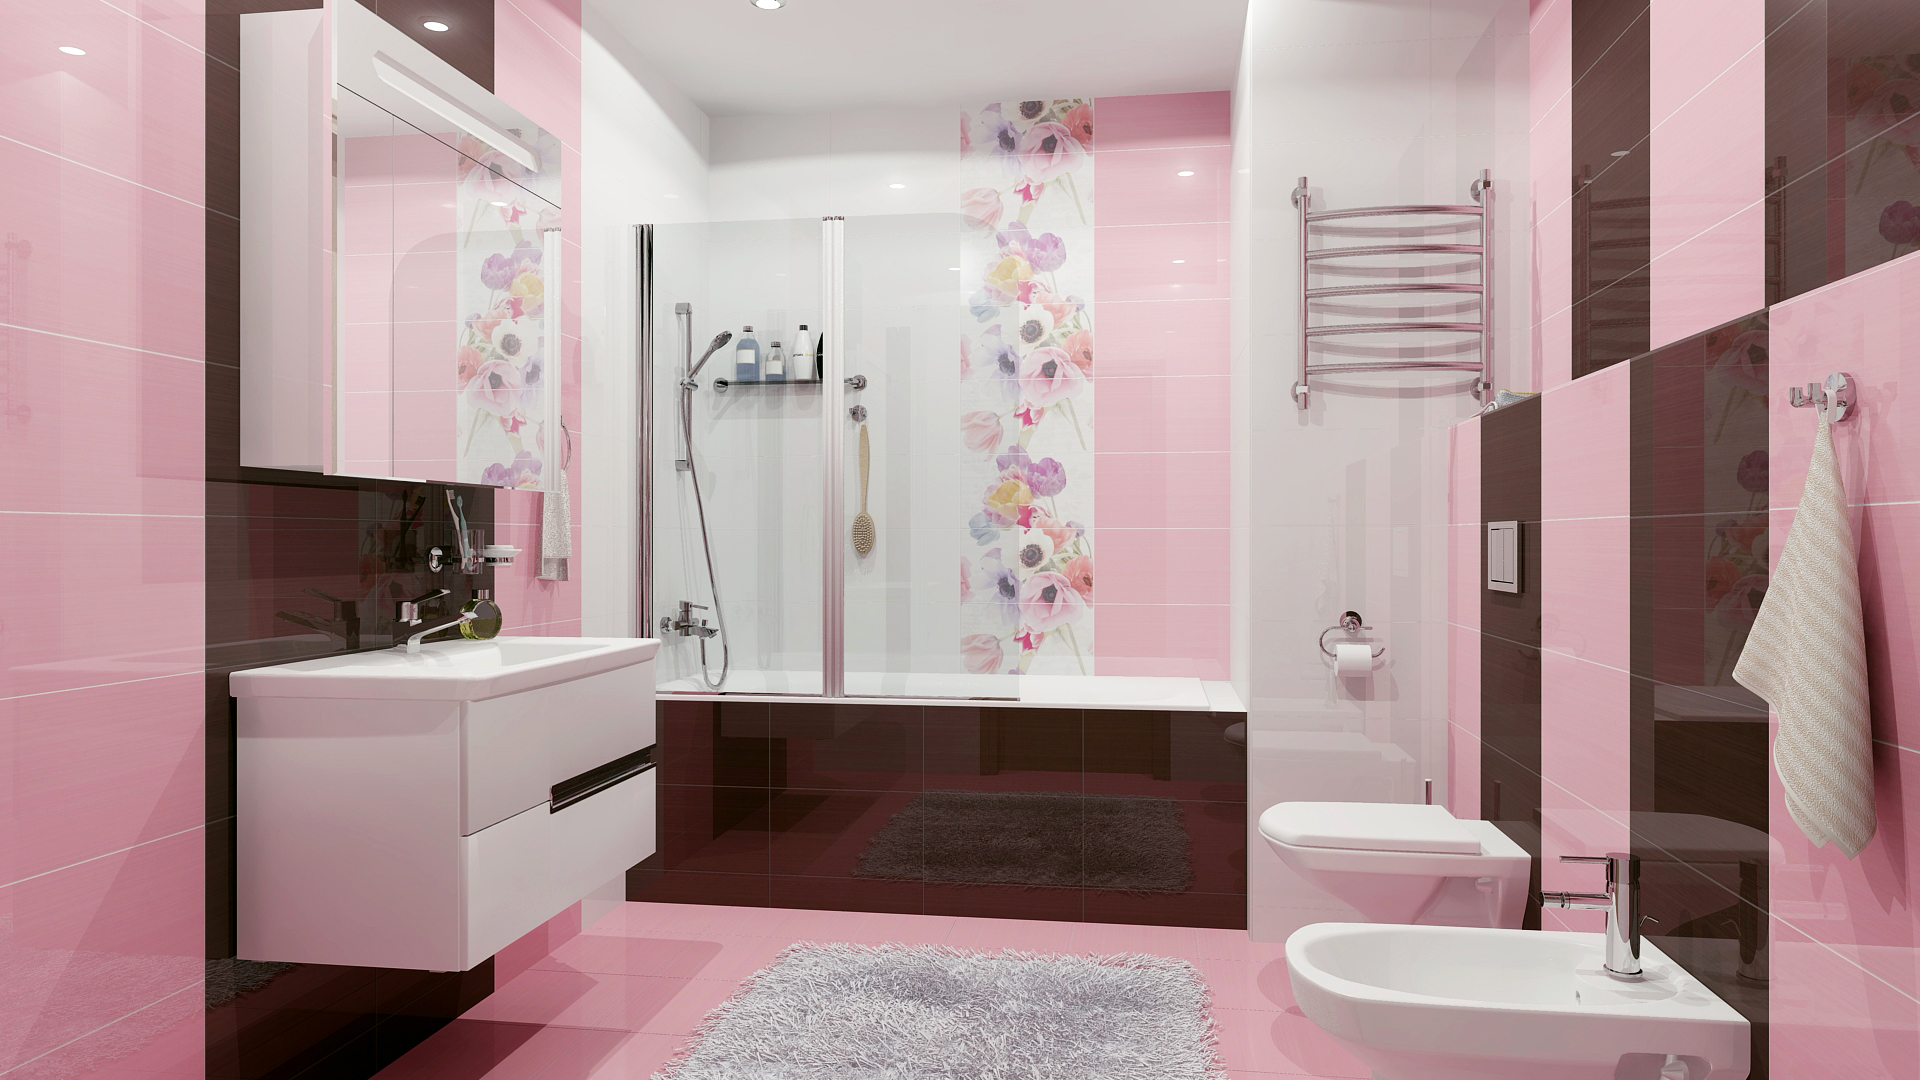 Оформление ванной комнаты плиткой: фото идеи обустройства. дизайн плитки для ванной комнаты: размеры, цвет, новинки, фото, сочетание, раскладка